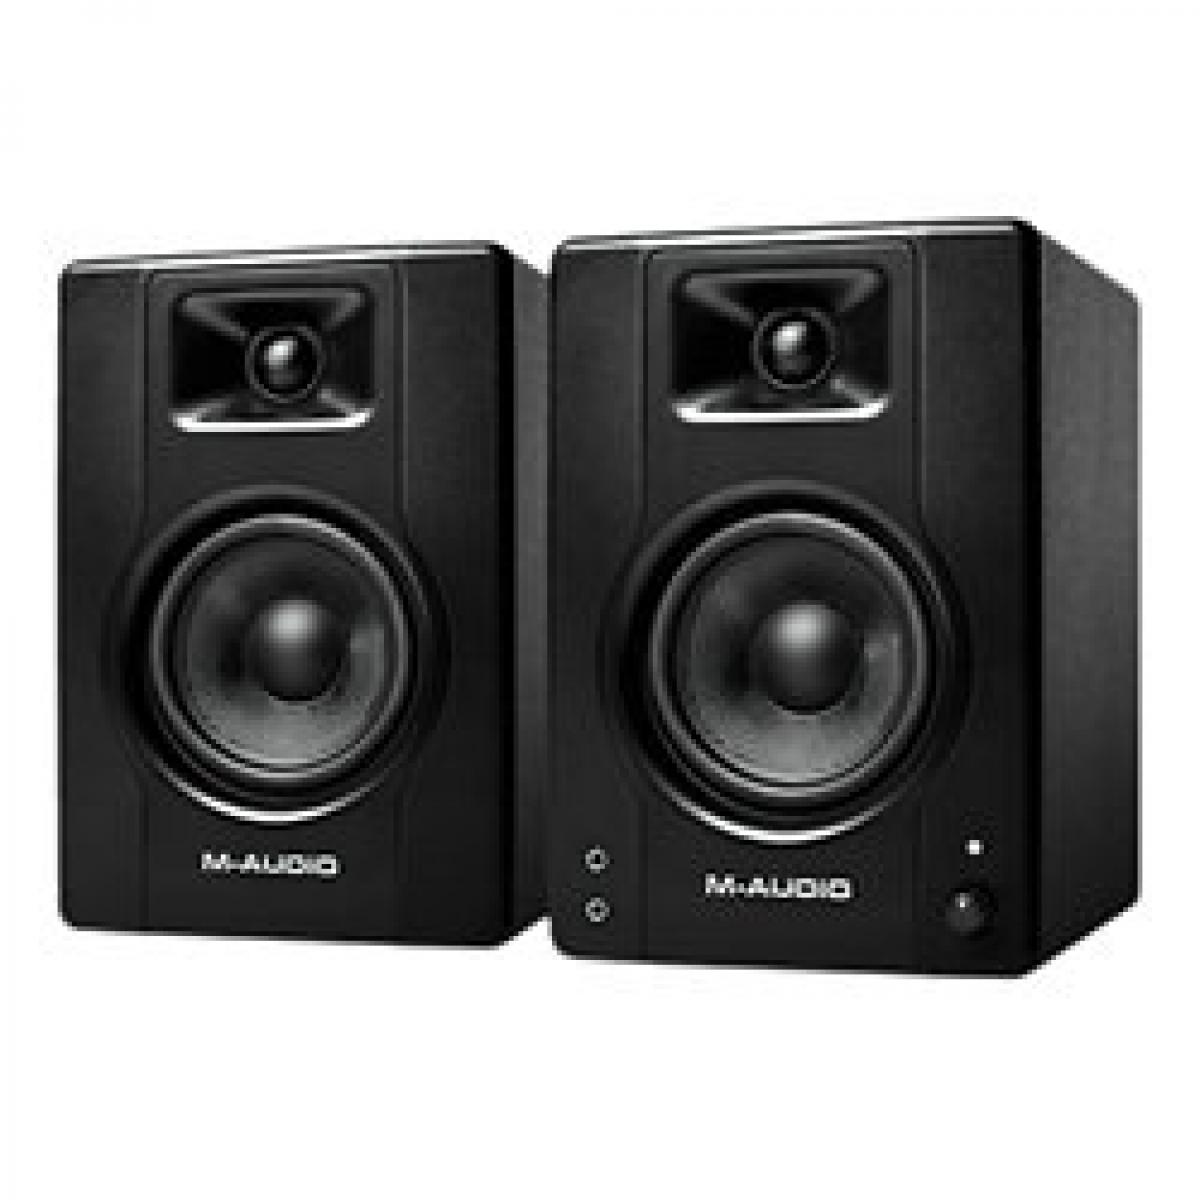 M Audio - M AUDIOBX4 D3 (la paire) - Enceintes amplifiées